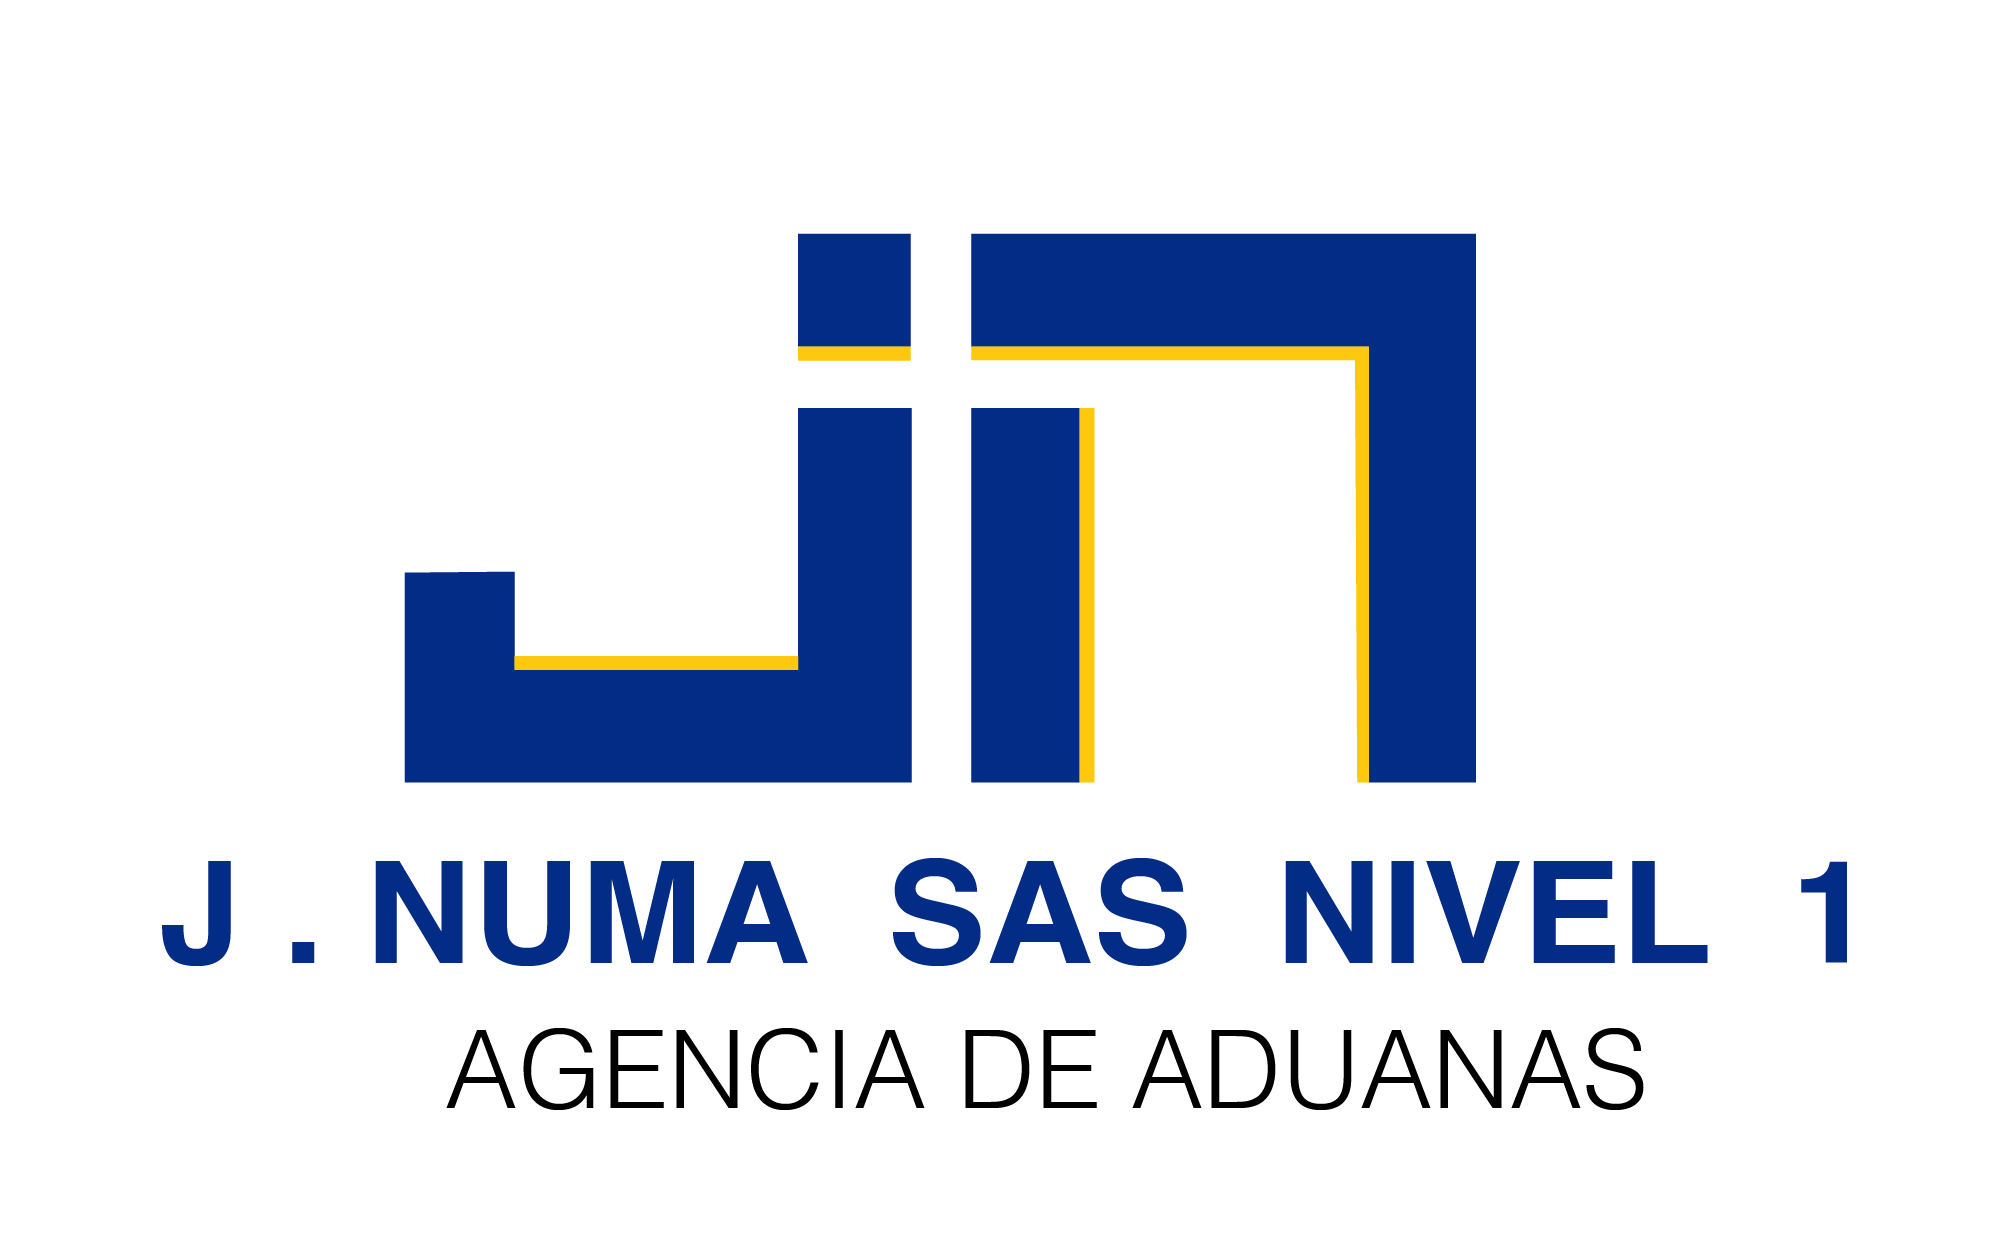 Agencias de Aduanas J Numas Nivel 1